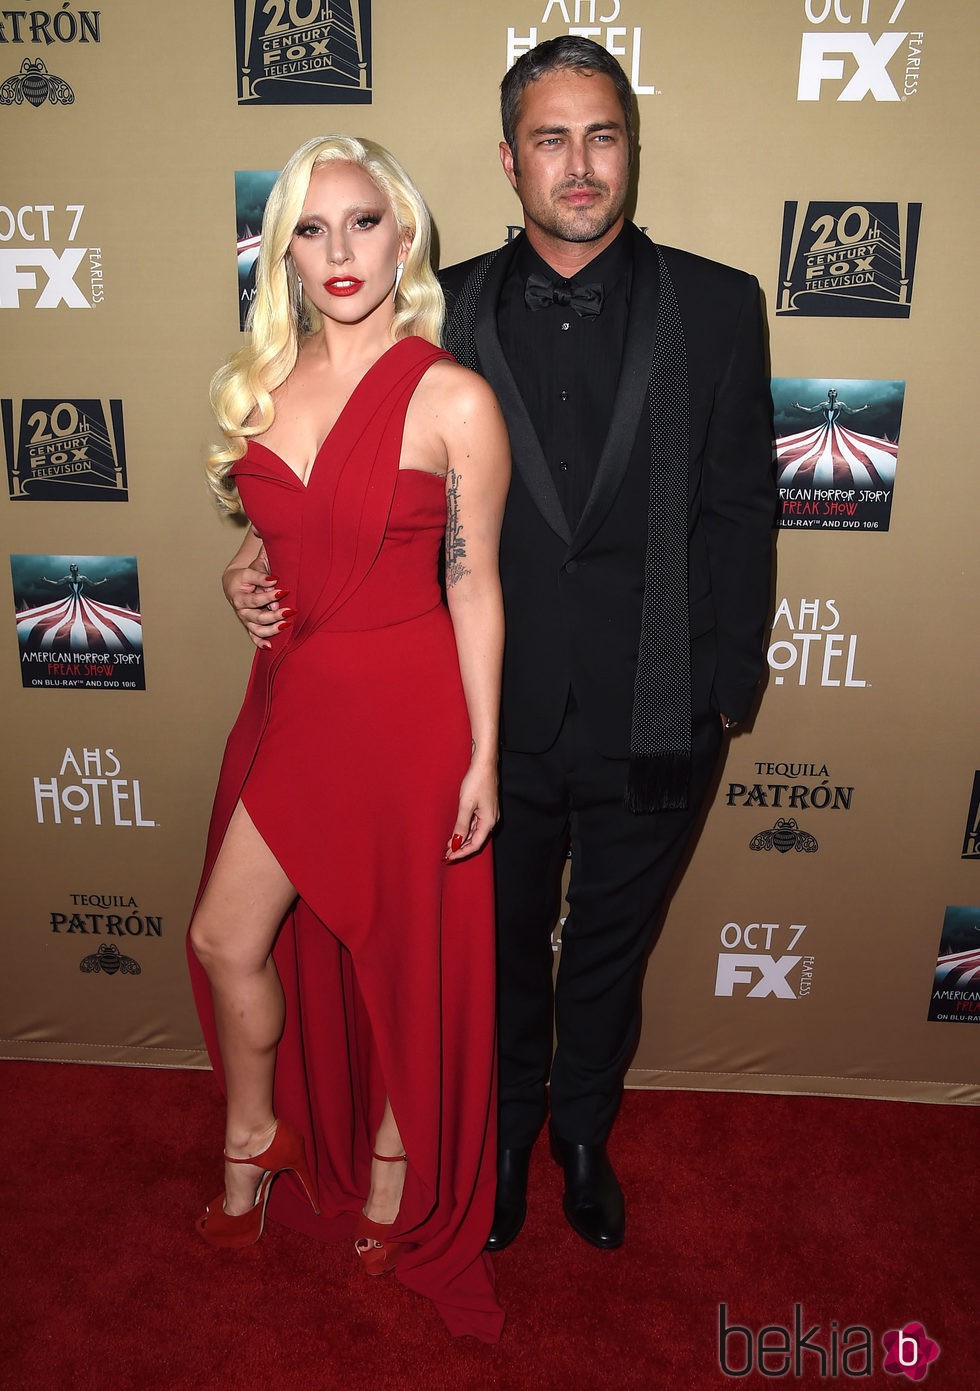 Lady Gaga y Taylor Kinney en el estreno de 'American Horror Story: Hotel' en Los Angeles